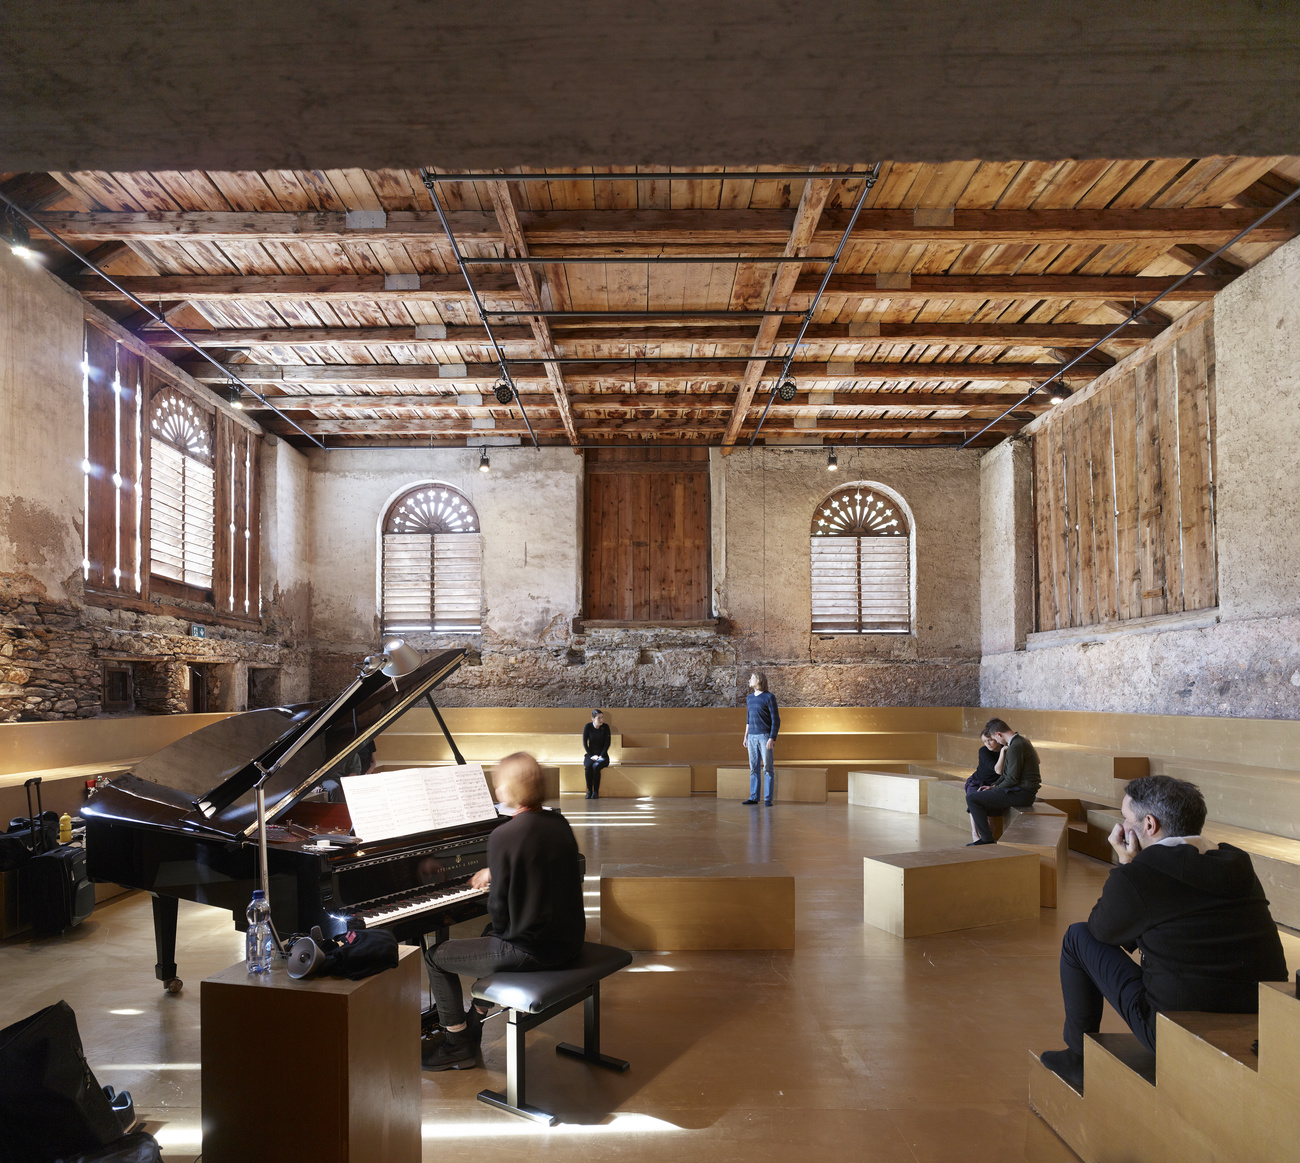 Piano et sièges dans une ancienne grange transformée en salle de spectacle.